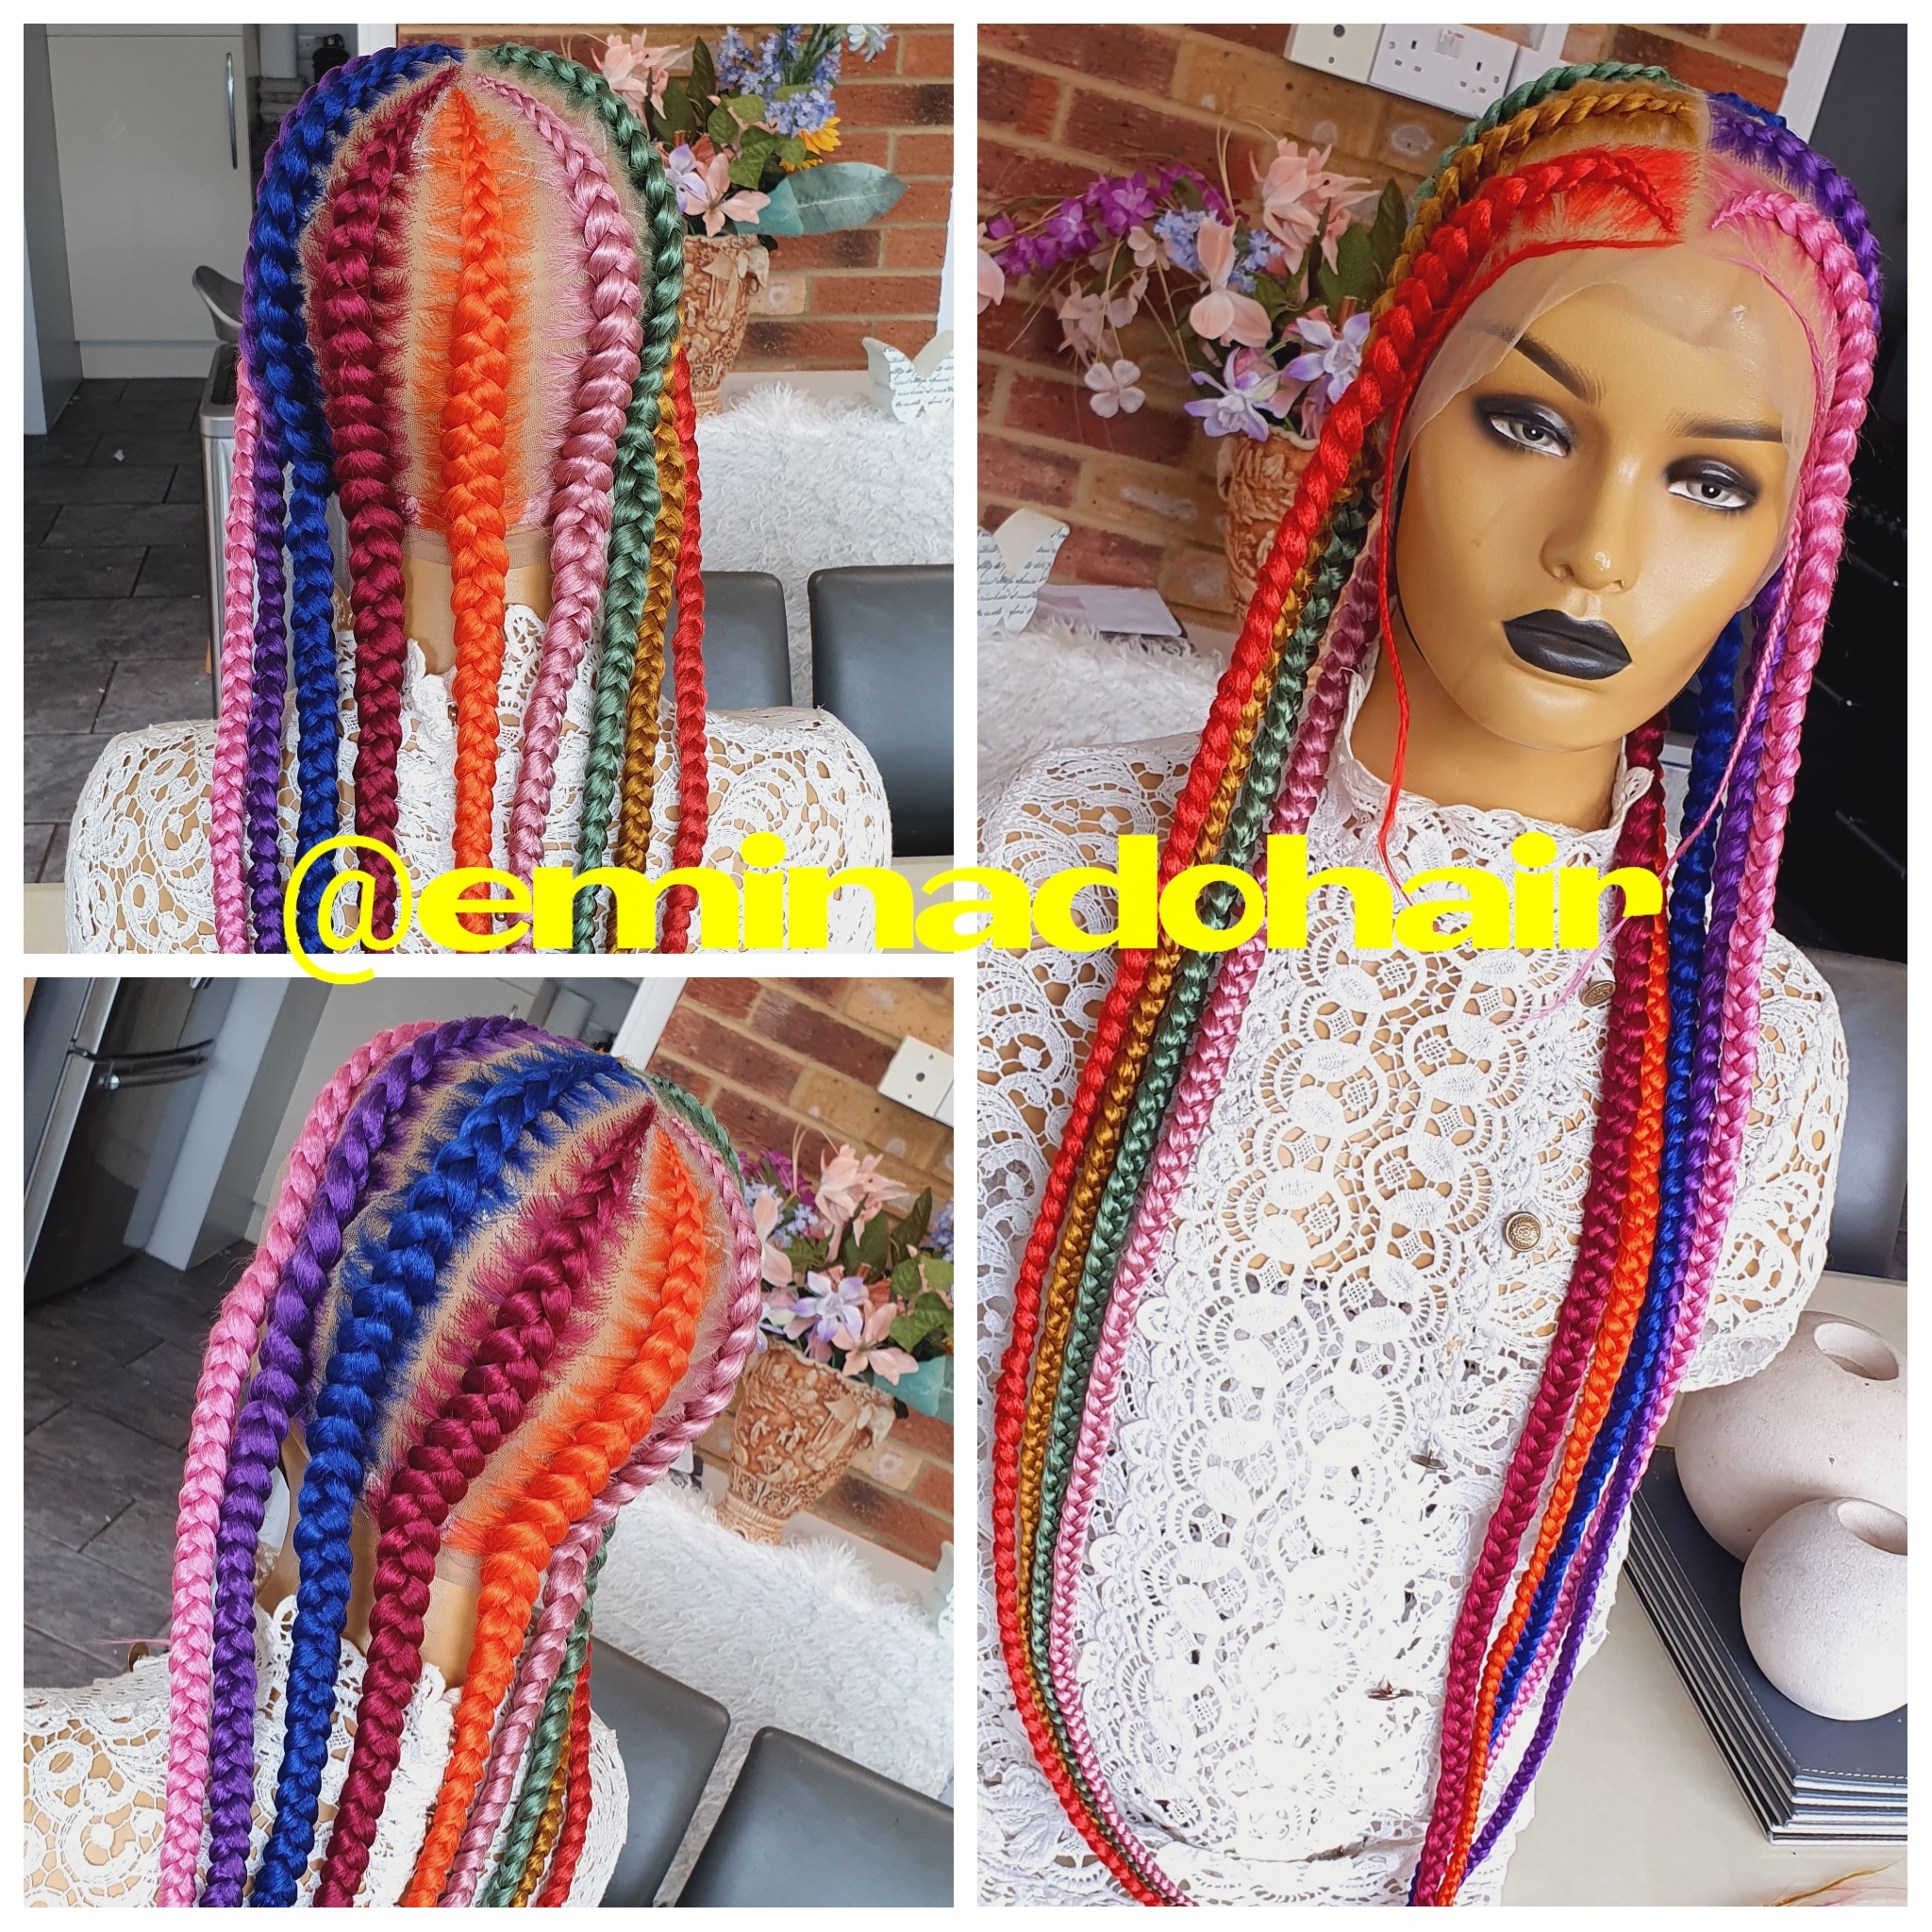 Braided wig: pop smoke braids wig. zizag braided wig. full lace braided wig